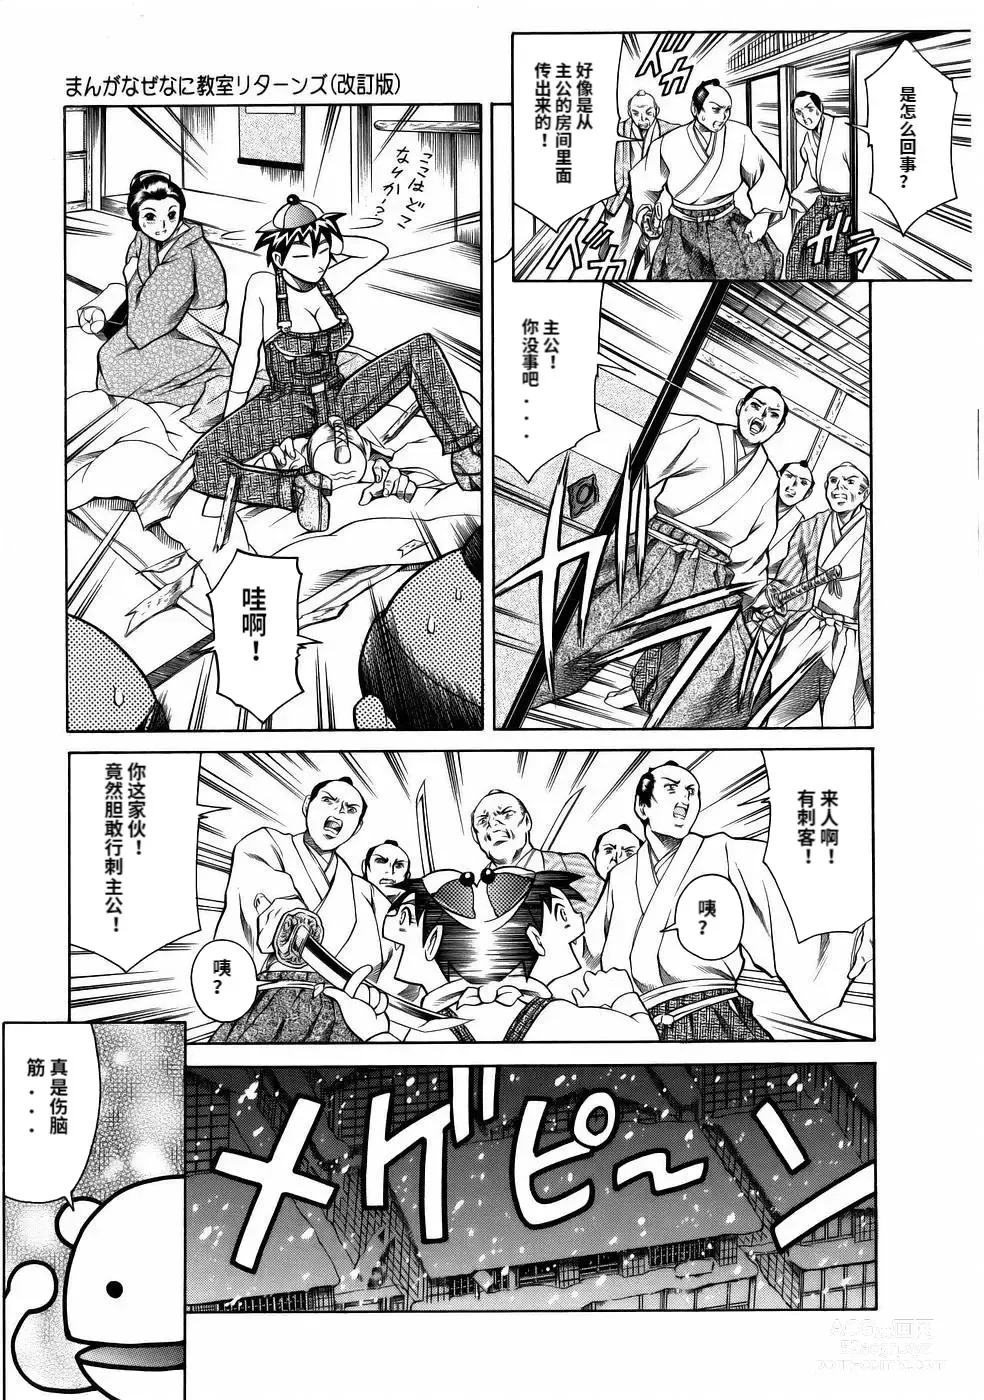 Page 31 of manga Manga Naze Nani Kyoushitsu